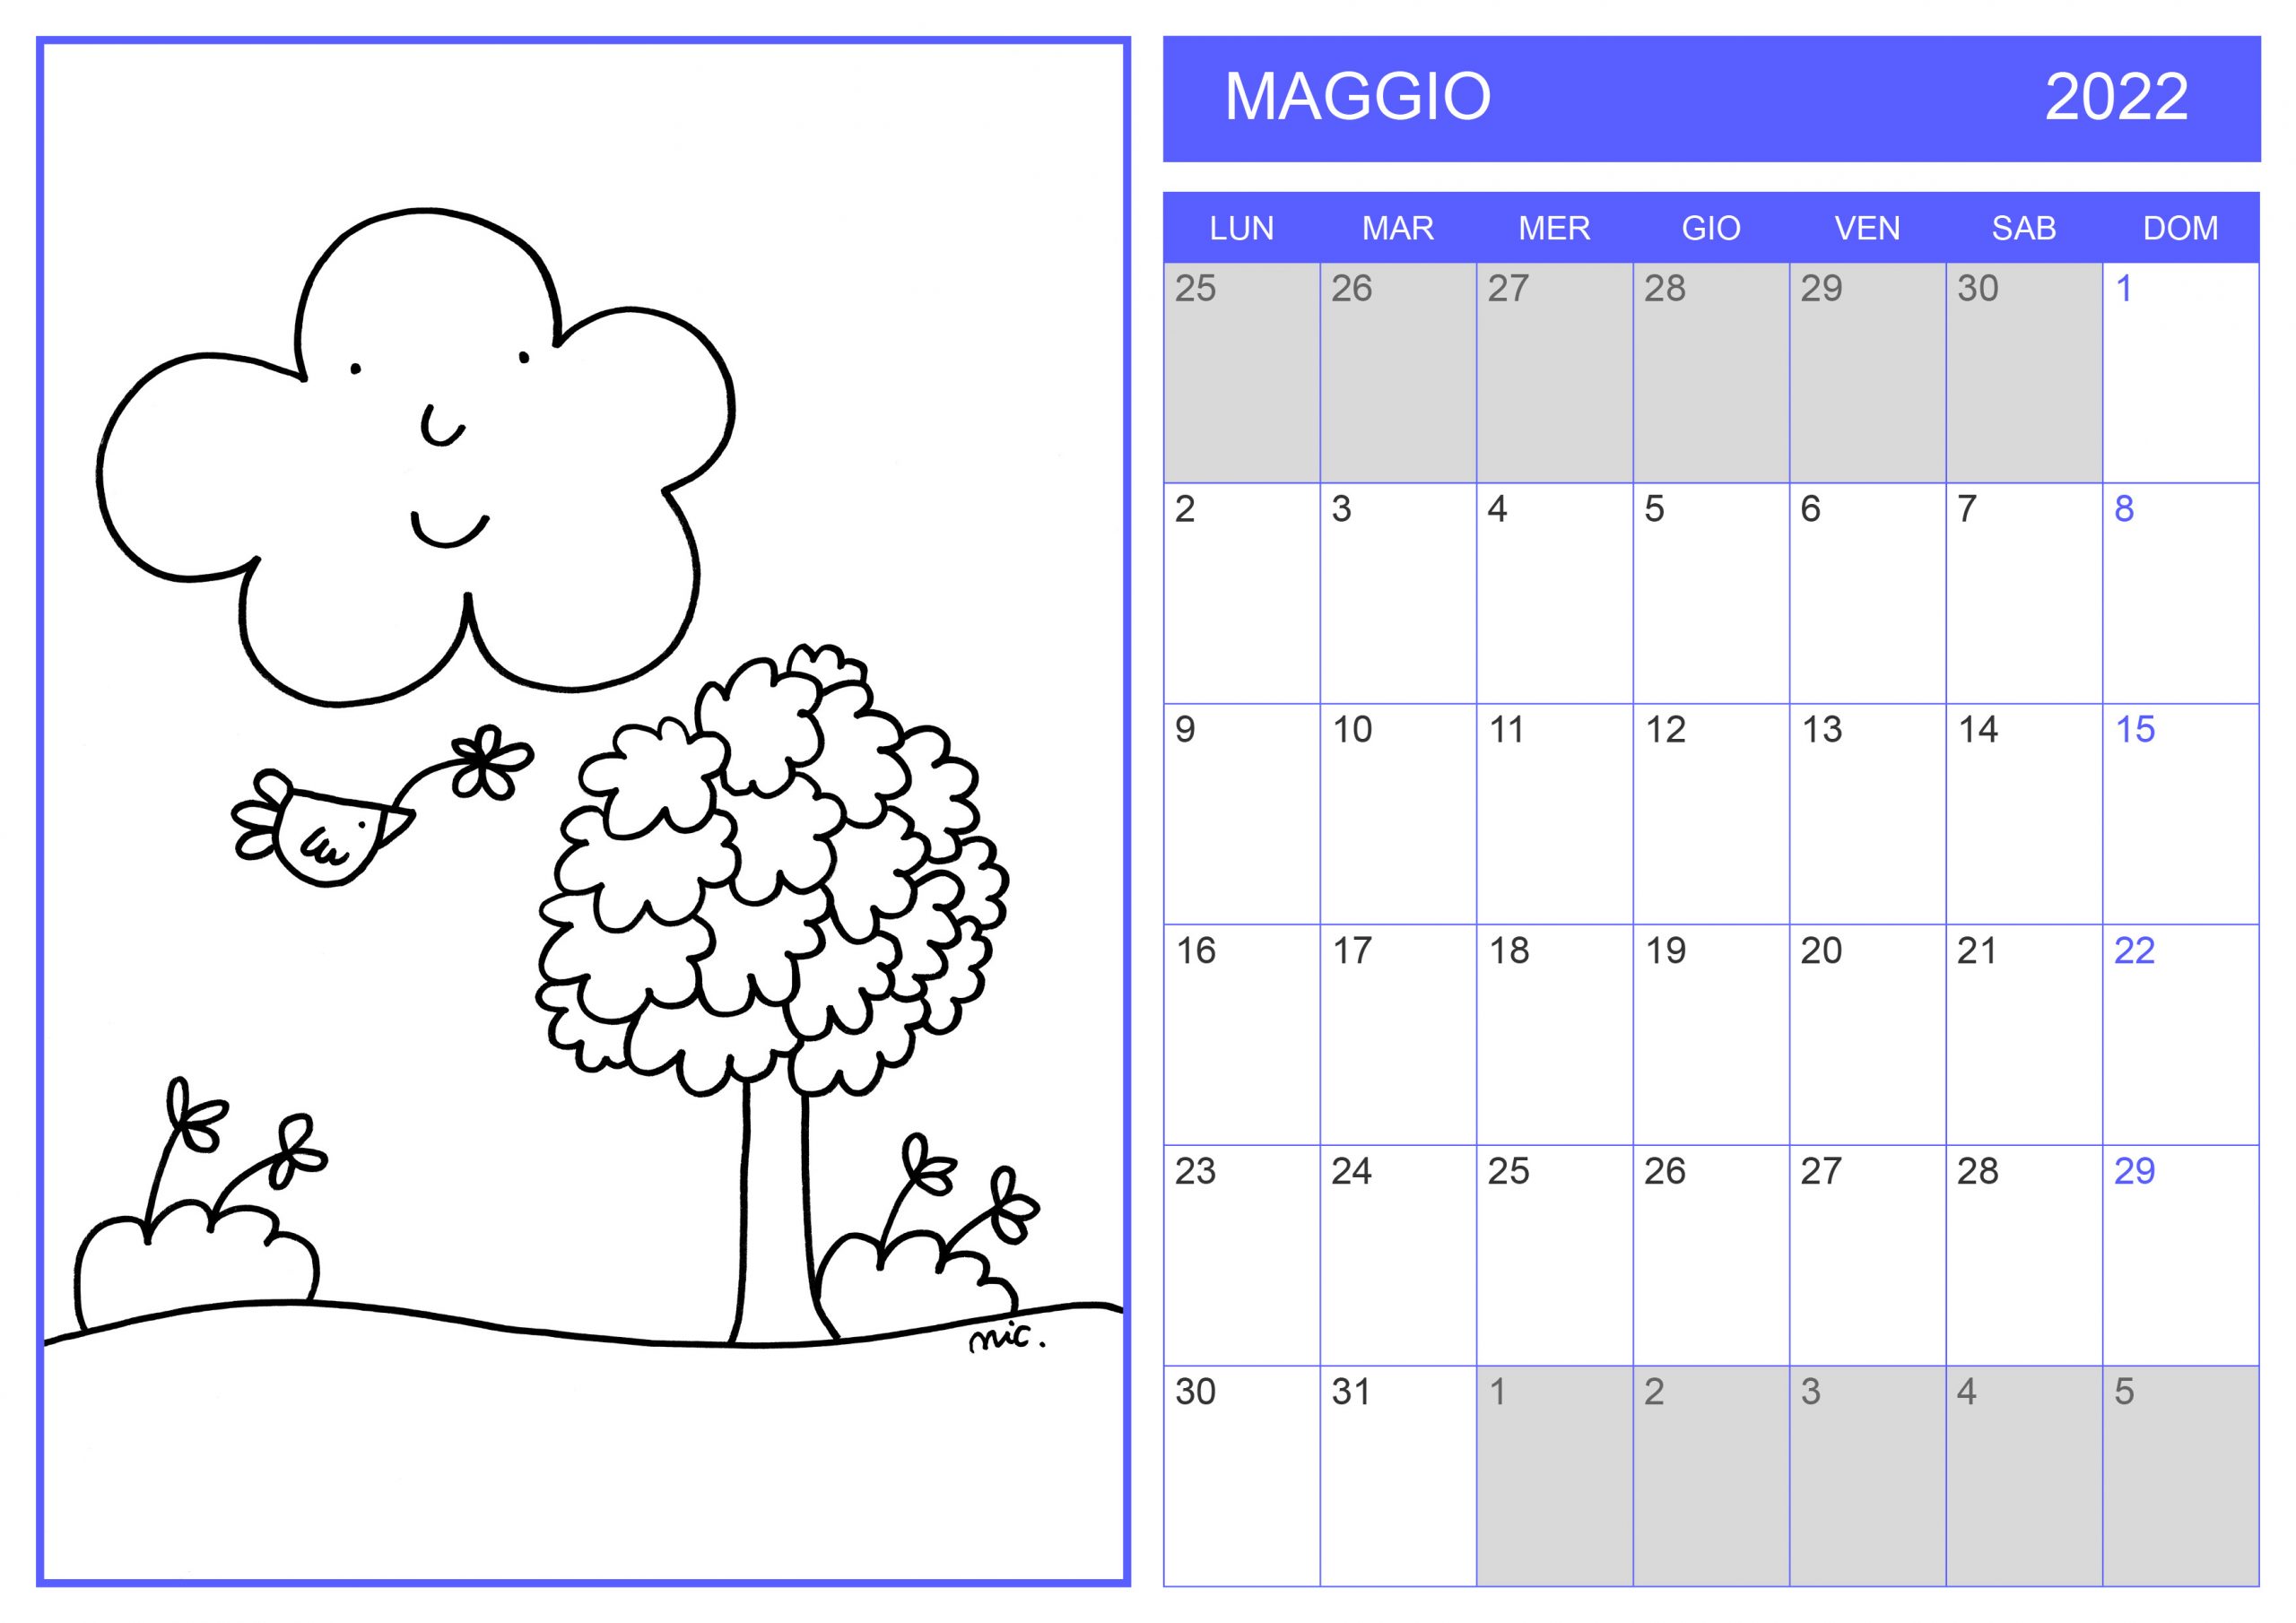 Calendario Nuvola Olga 2022